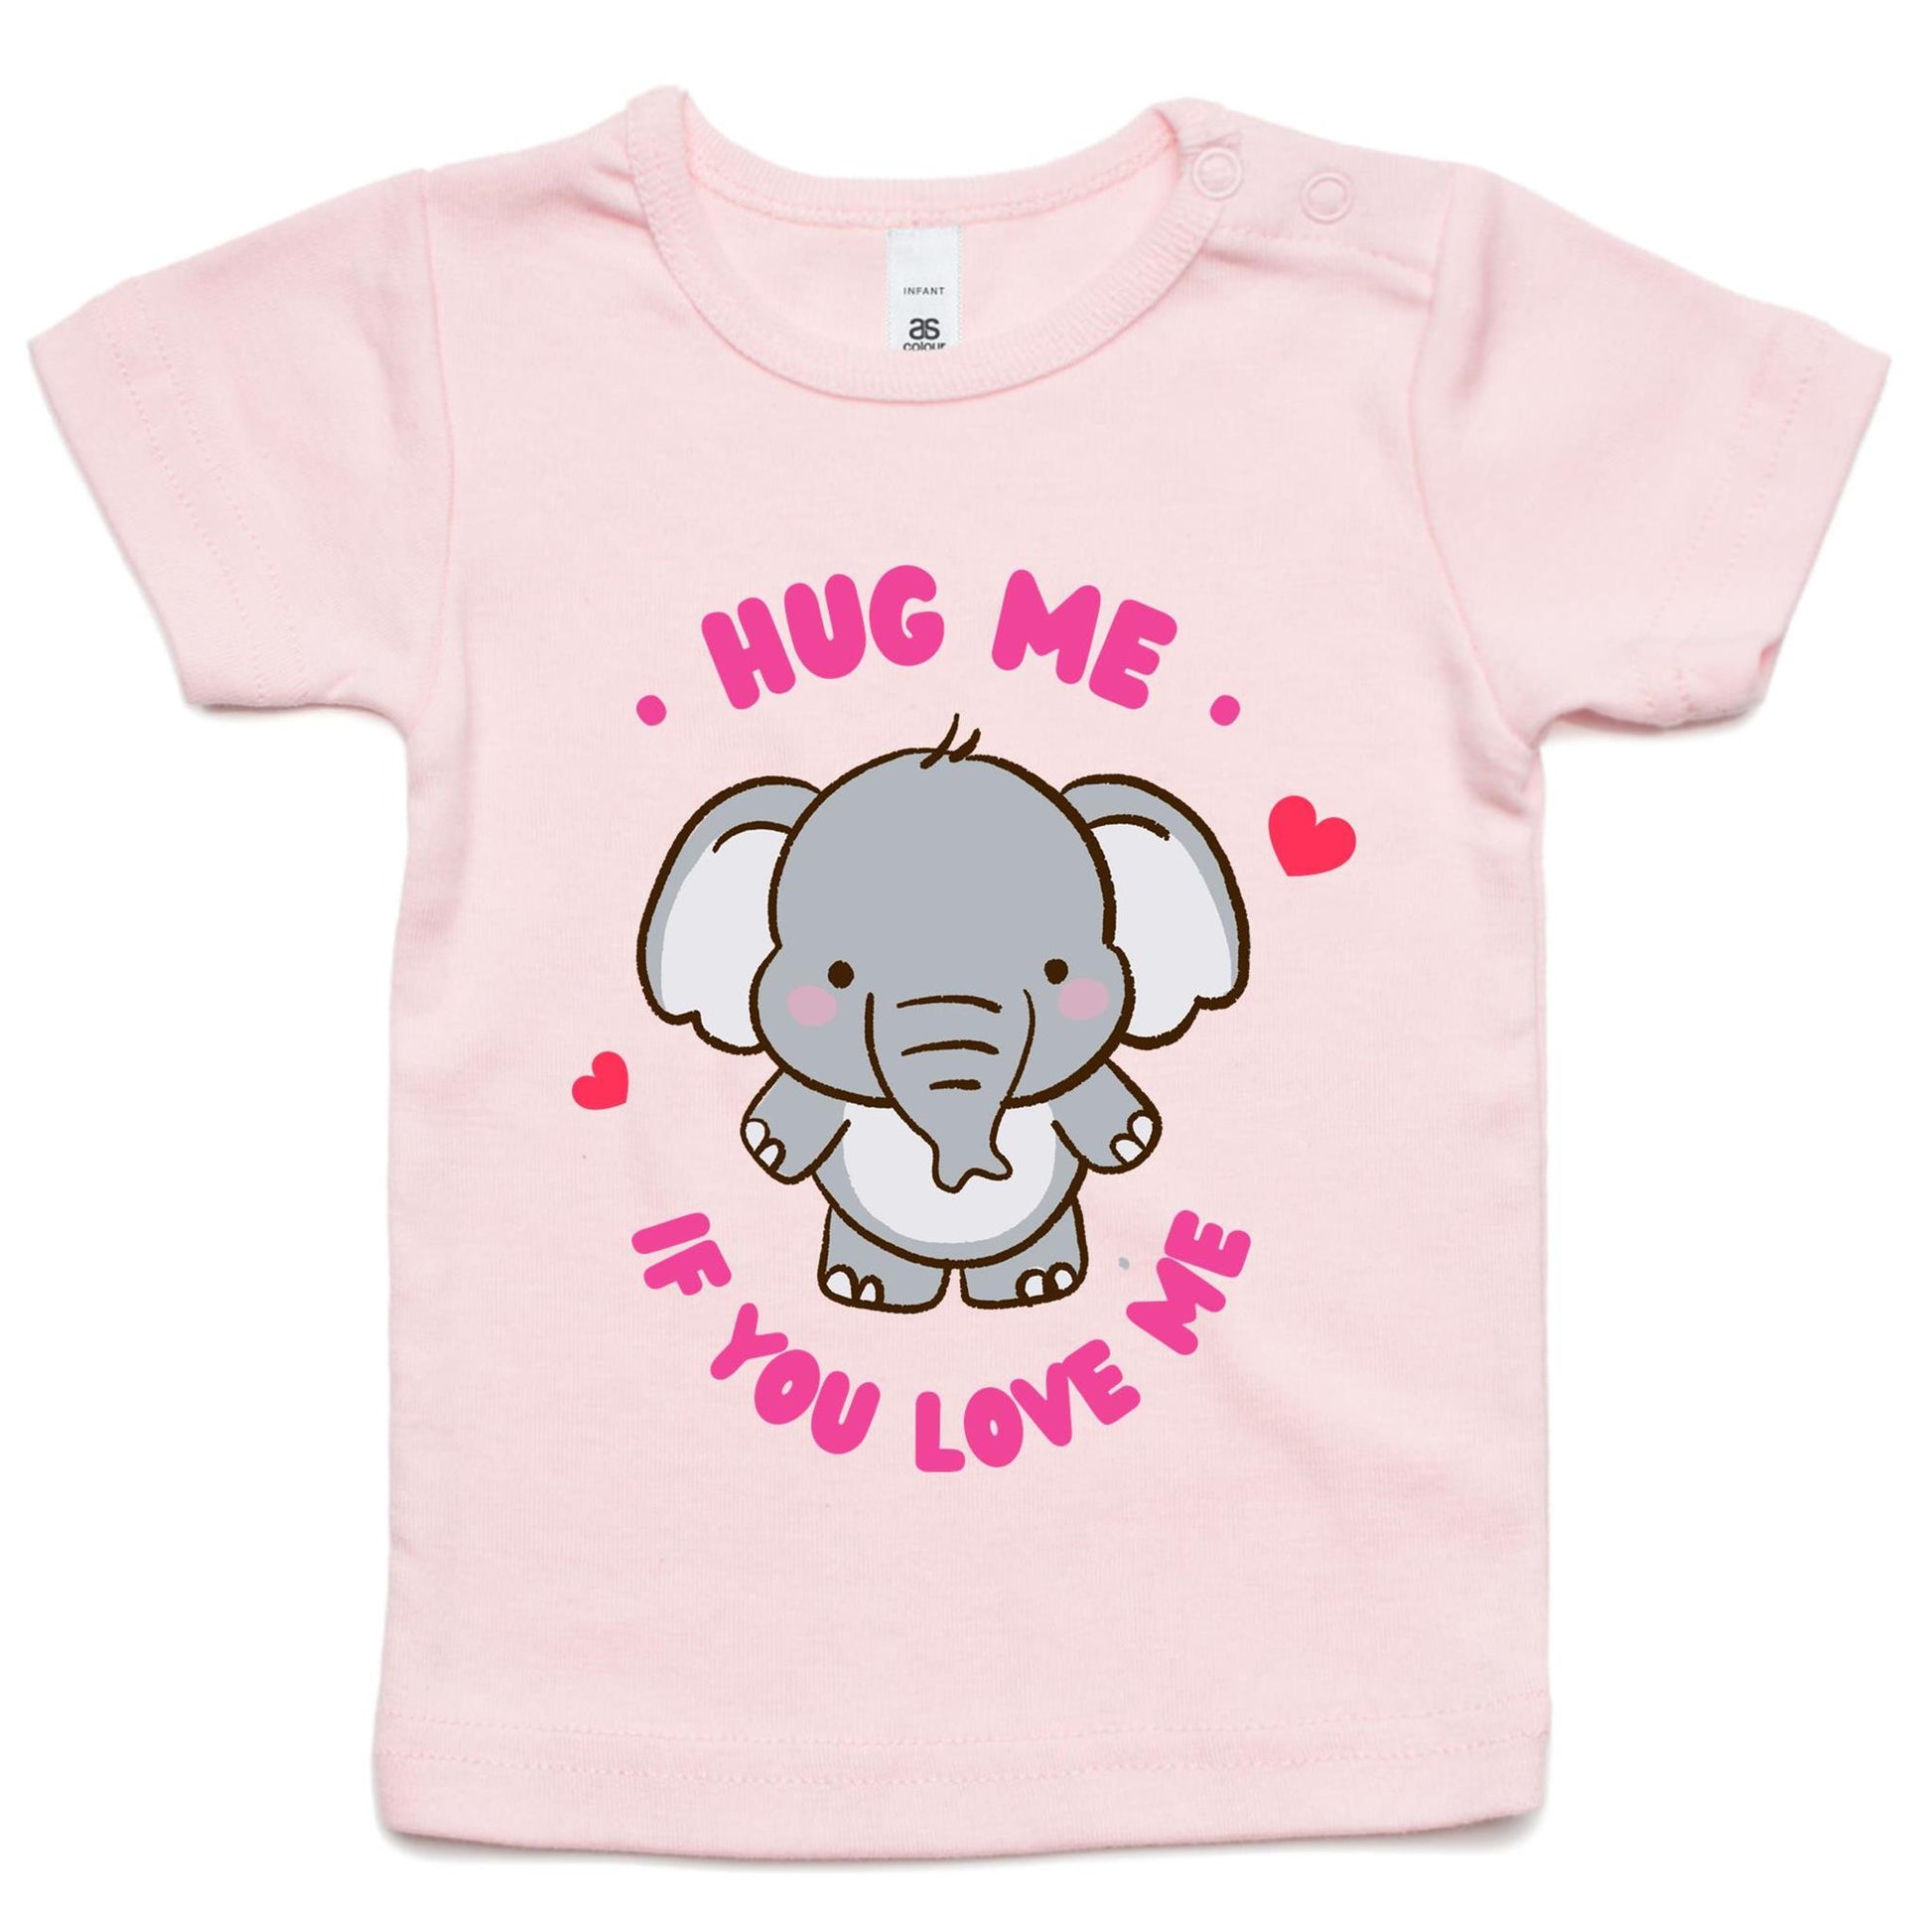 Hug Me If You Love Me - Baby T-shirt Pink Baby T-shirt animal